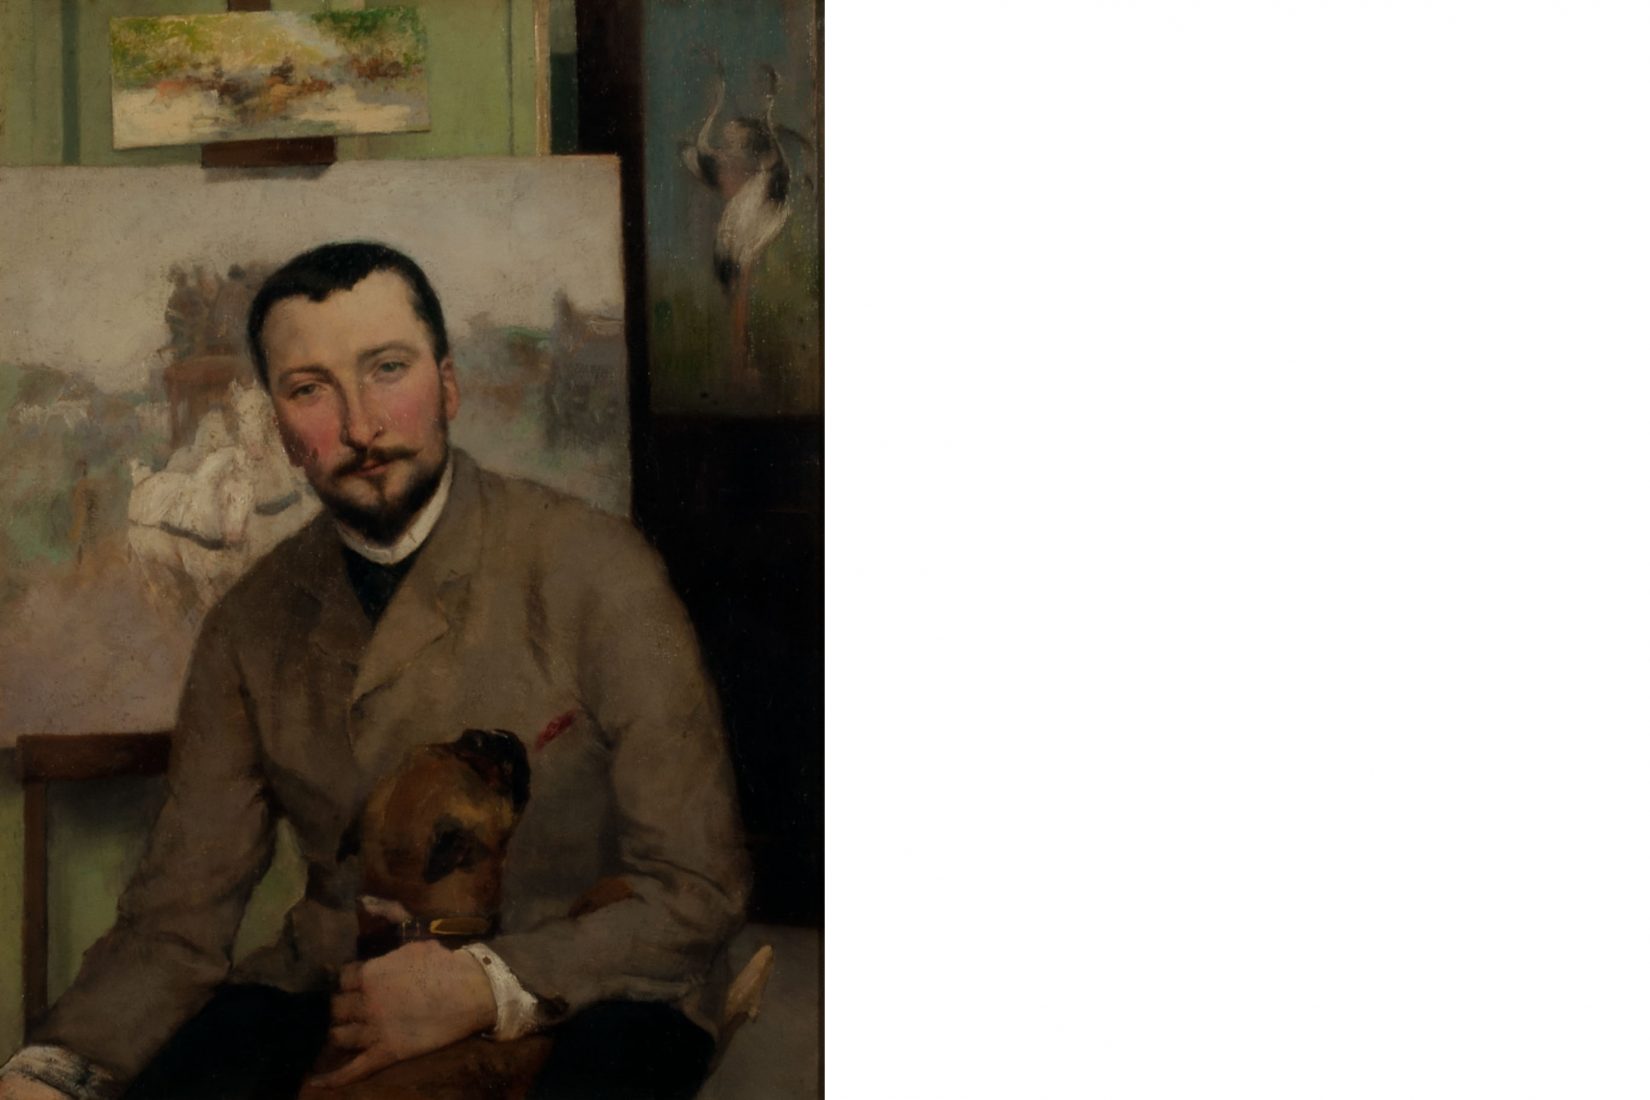 Peinture de Julia Beck représentant Georg Arsenius assis dans son atelier et caressant un chien, avec derrière lui une peinture sur un chevalet.